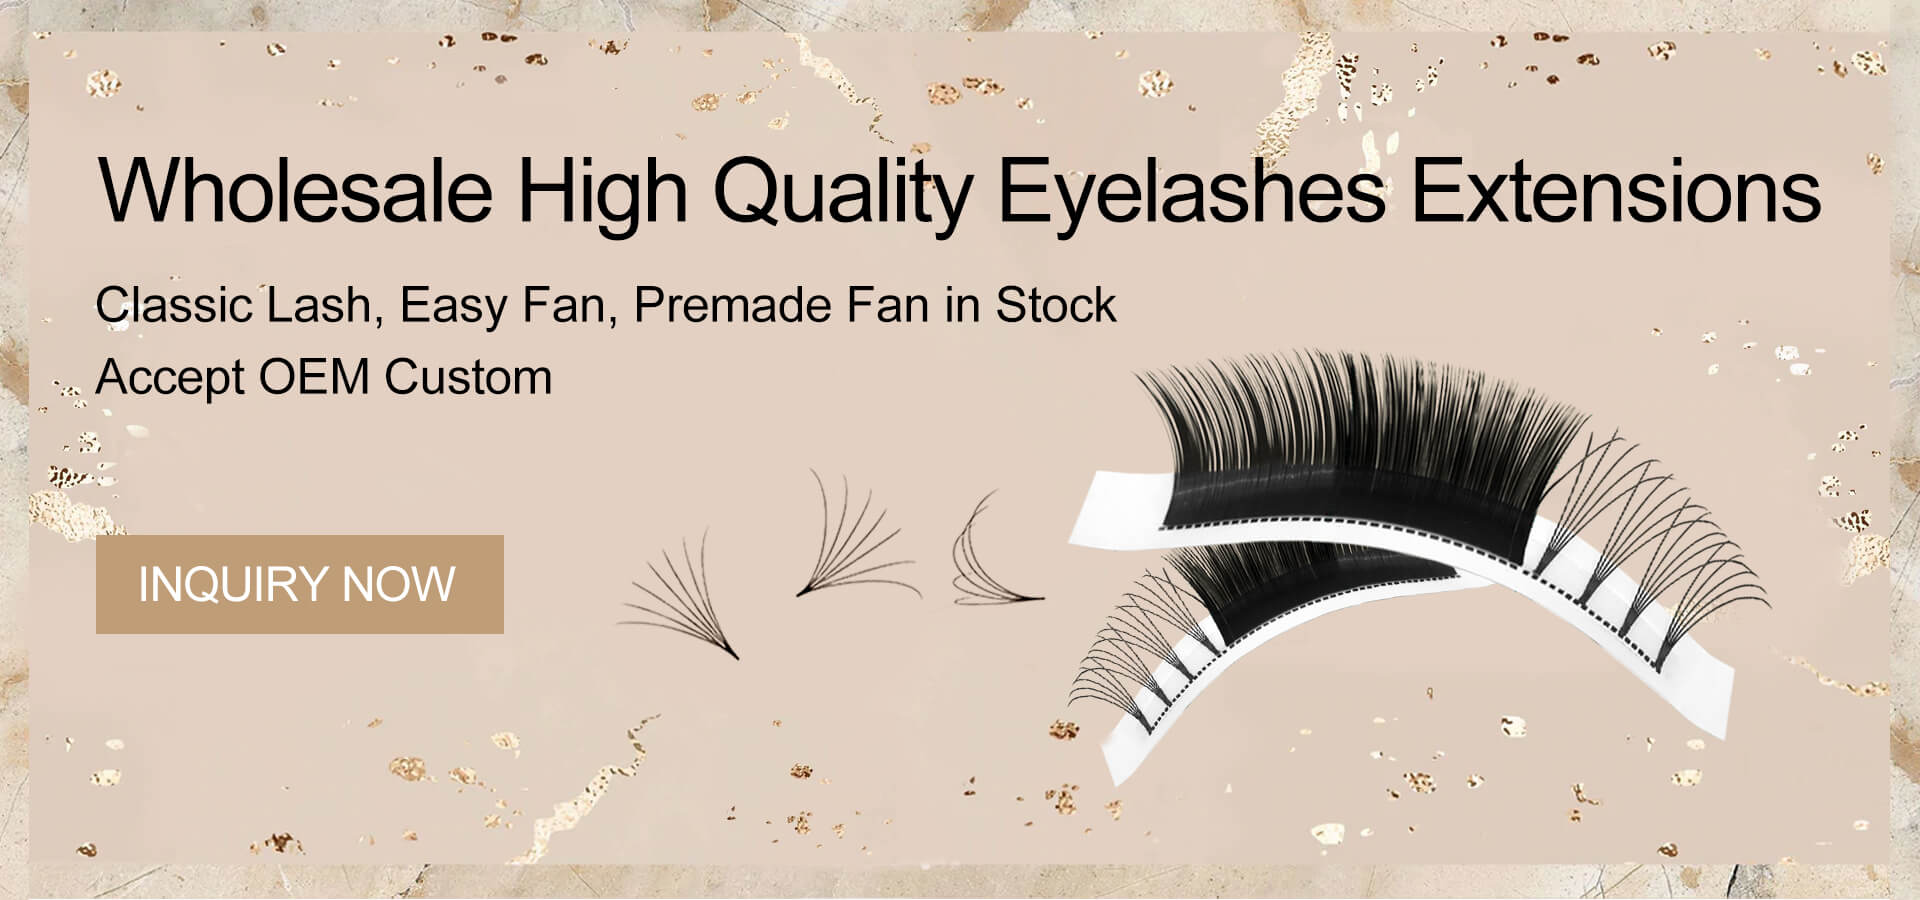 eyelash-glue-banner.jpg